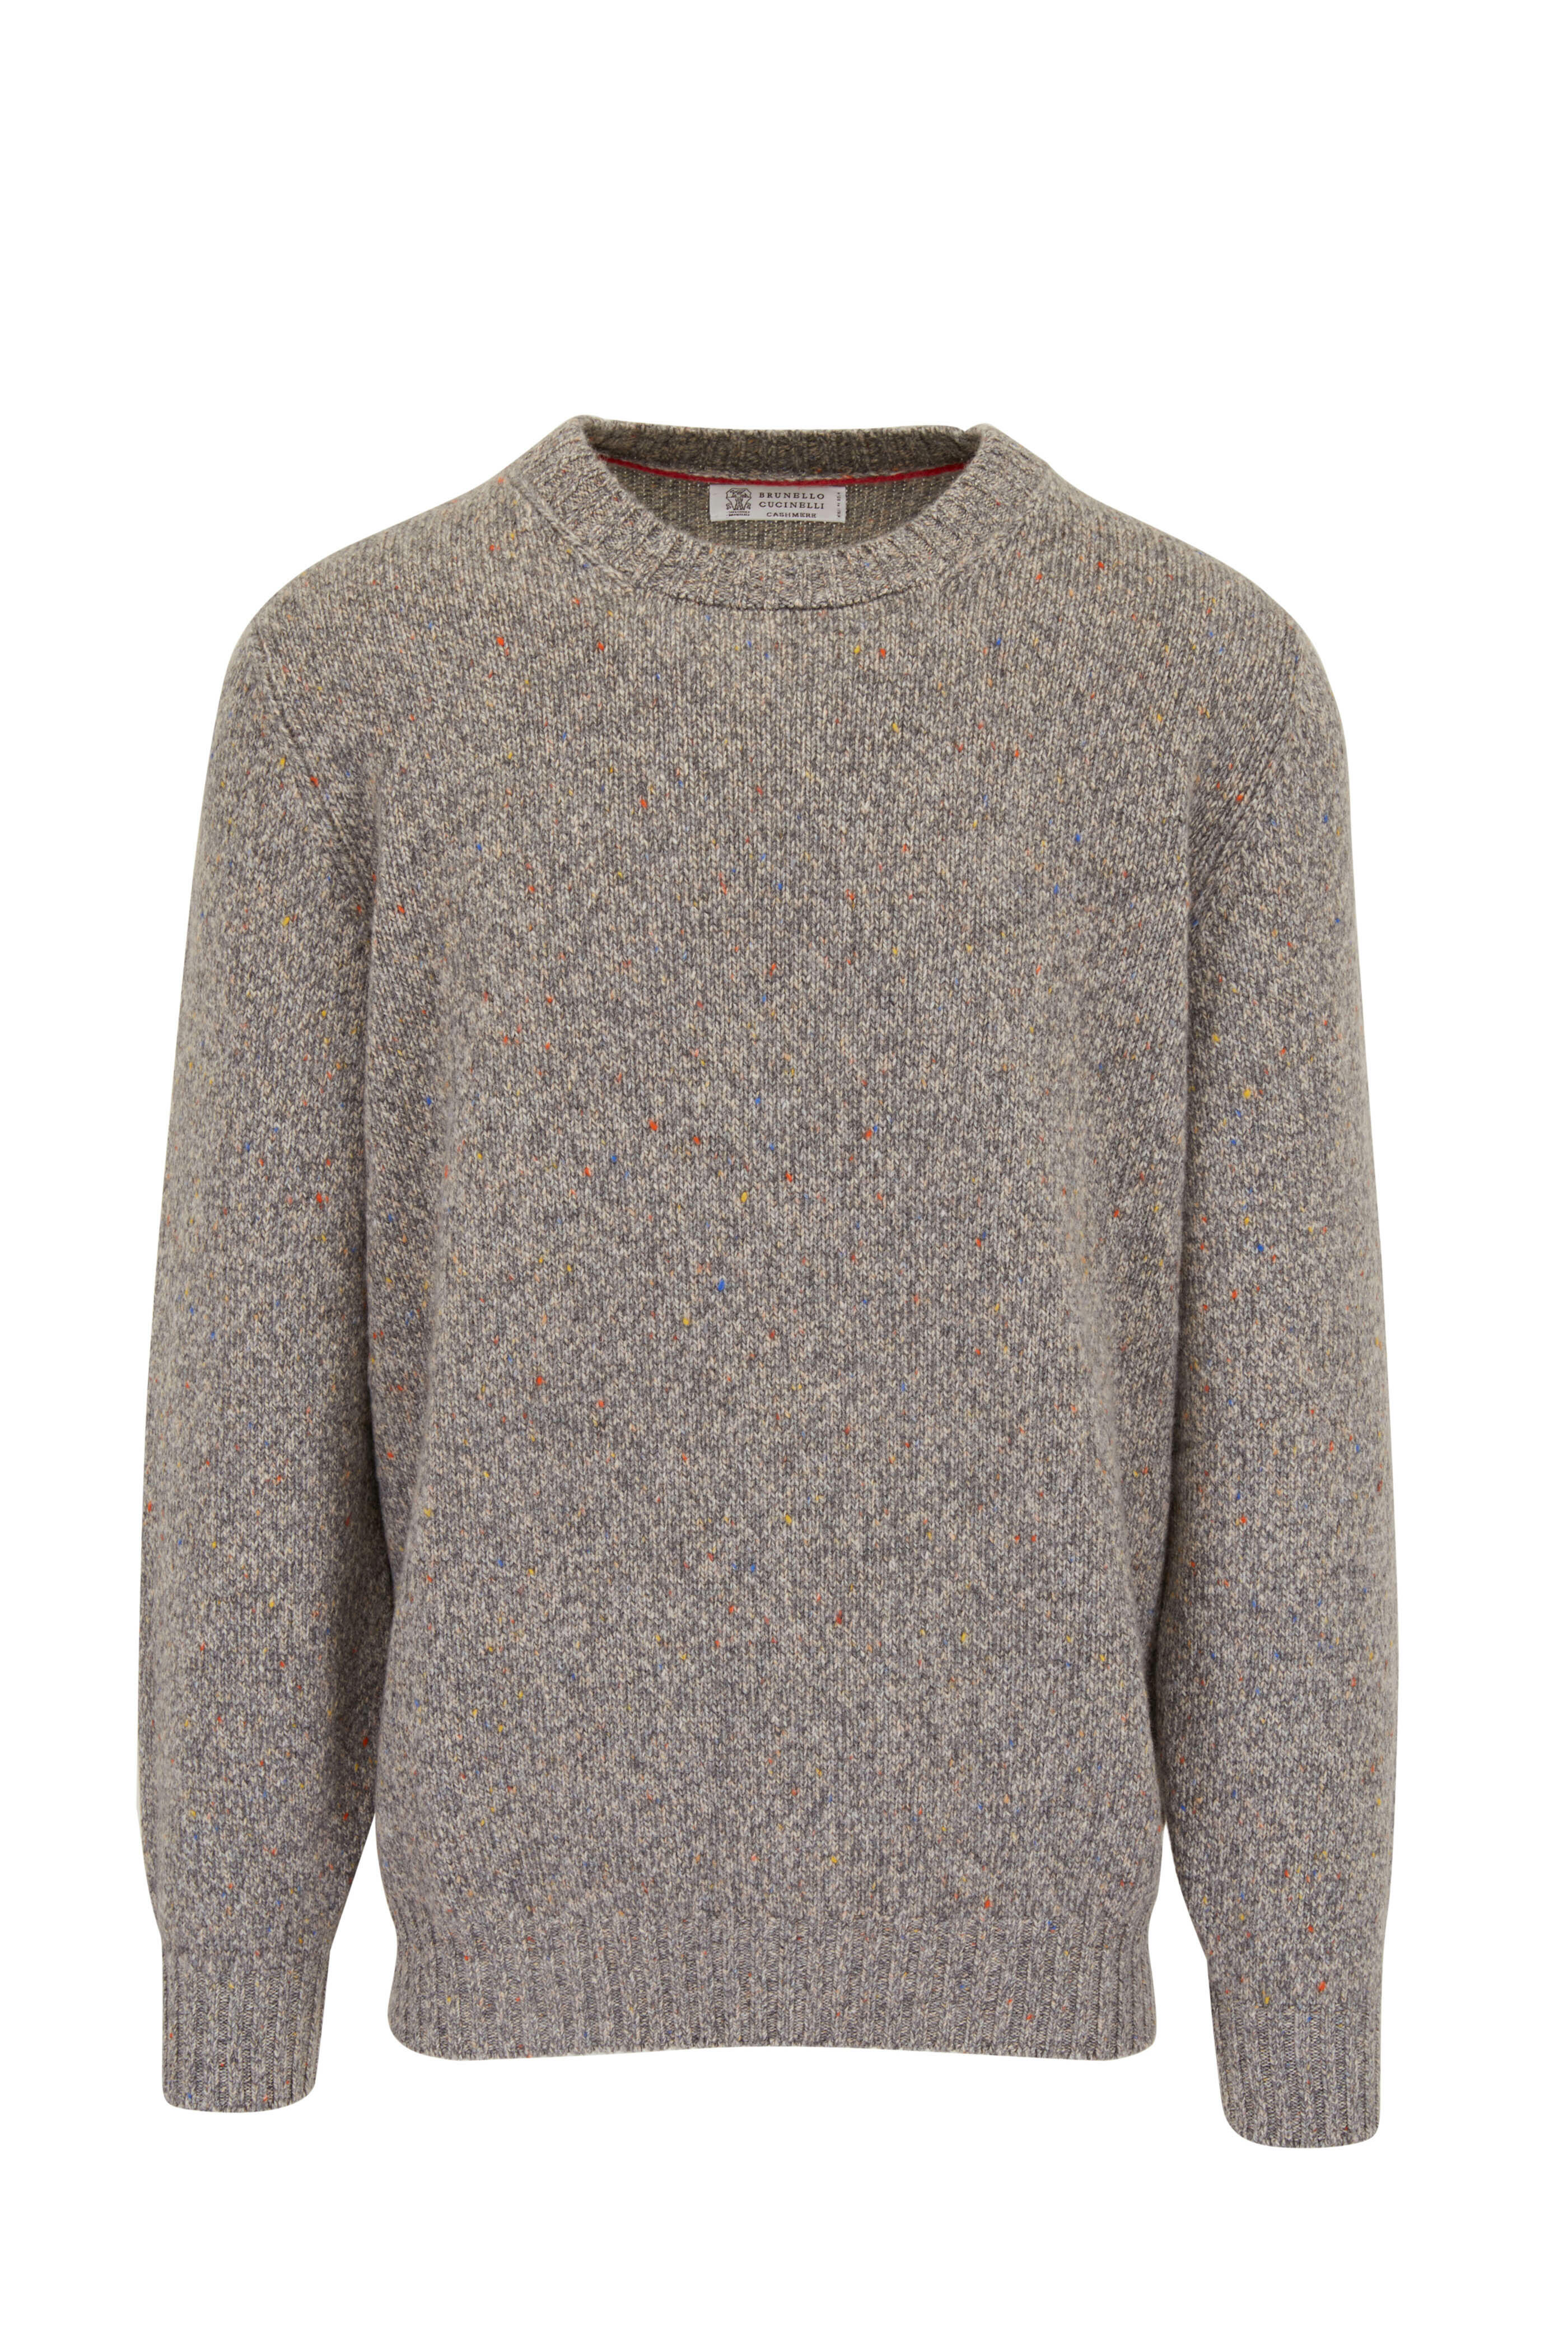 Brunello Cucinelli - Multicolor Cashmere Sweater